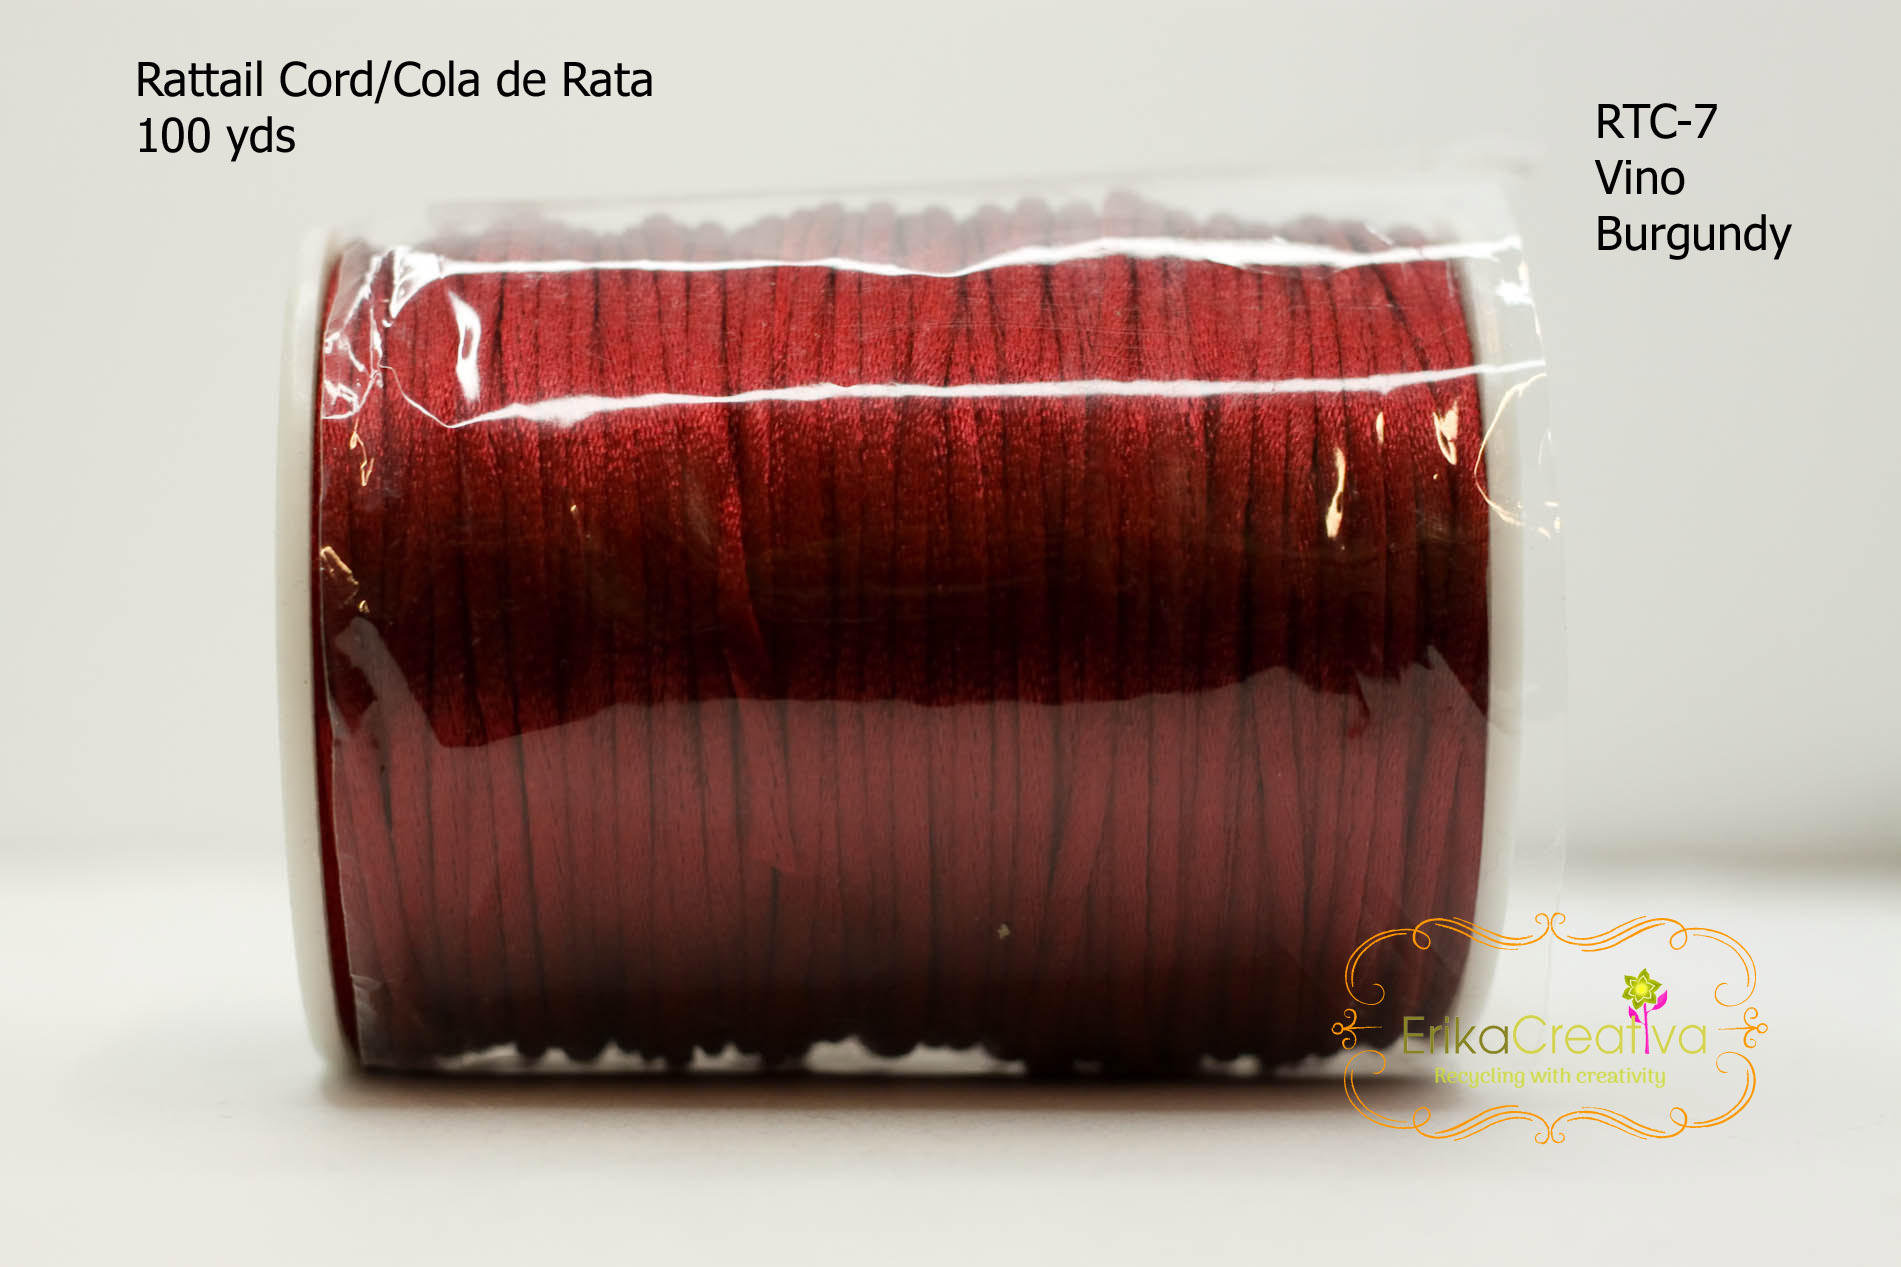 2mm Satin Rattail Cord – ErikaCreativa